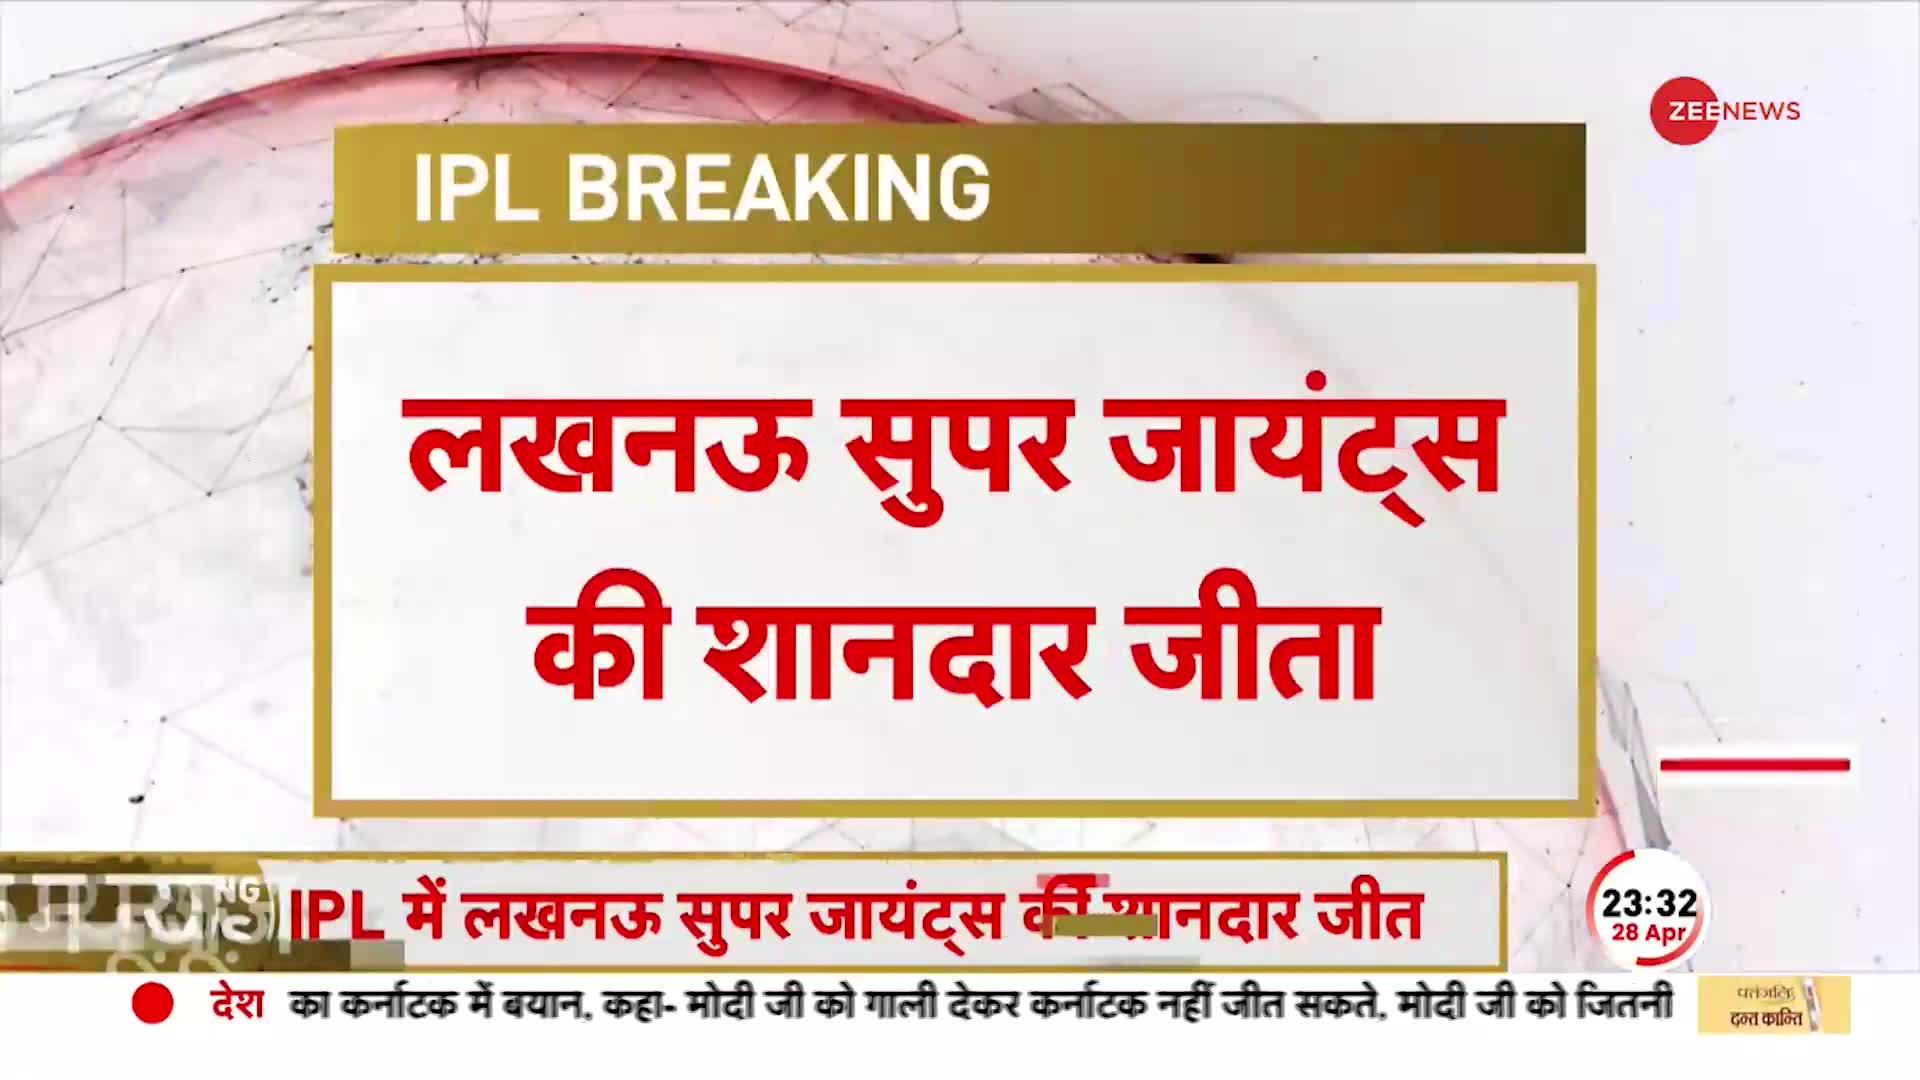 IPL Breaking: LSG ने पंजाब किंग्स को 56 रन से दी करारी मात